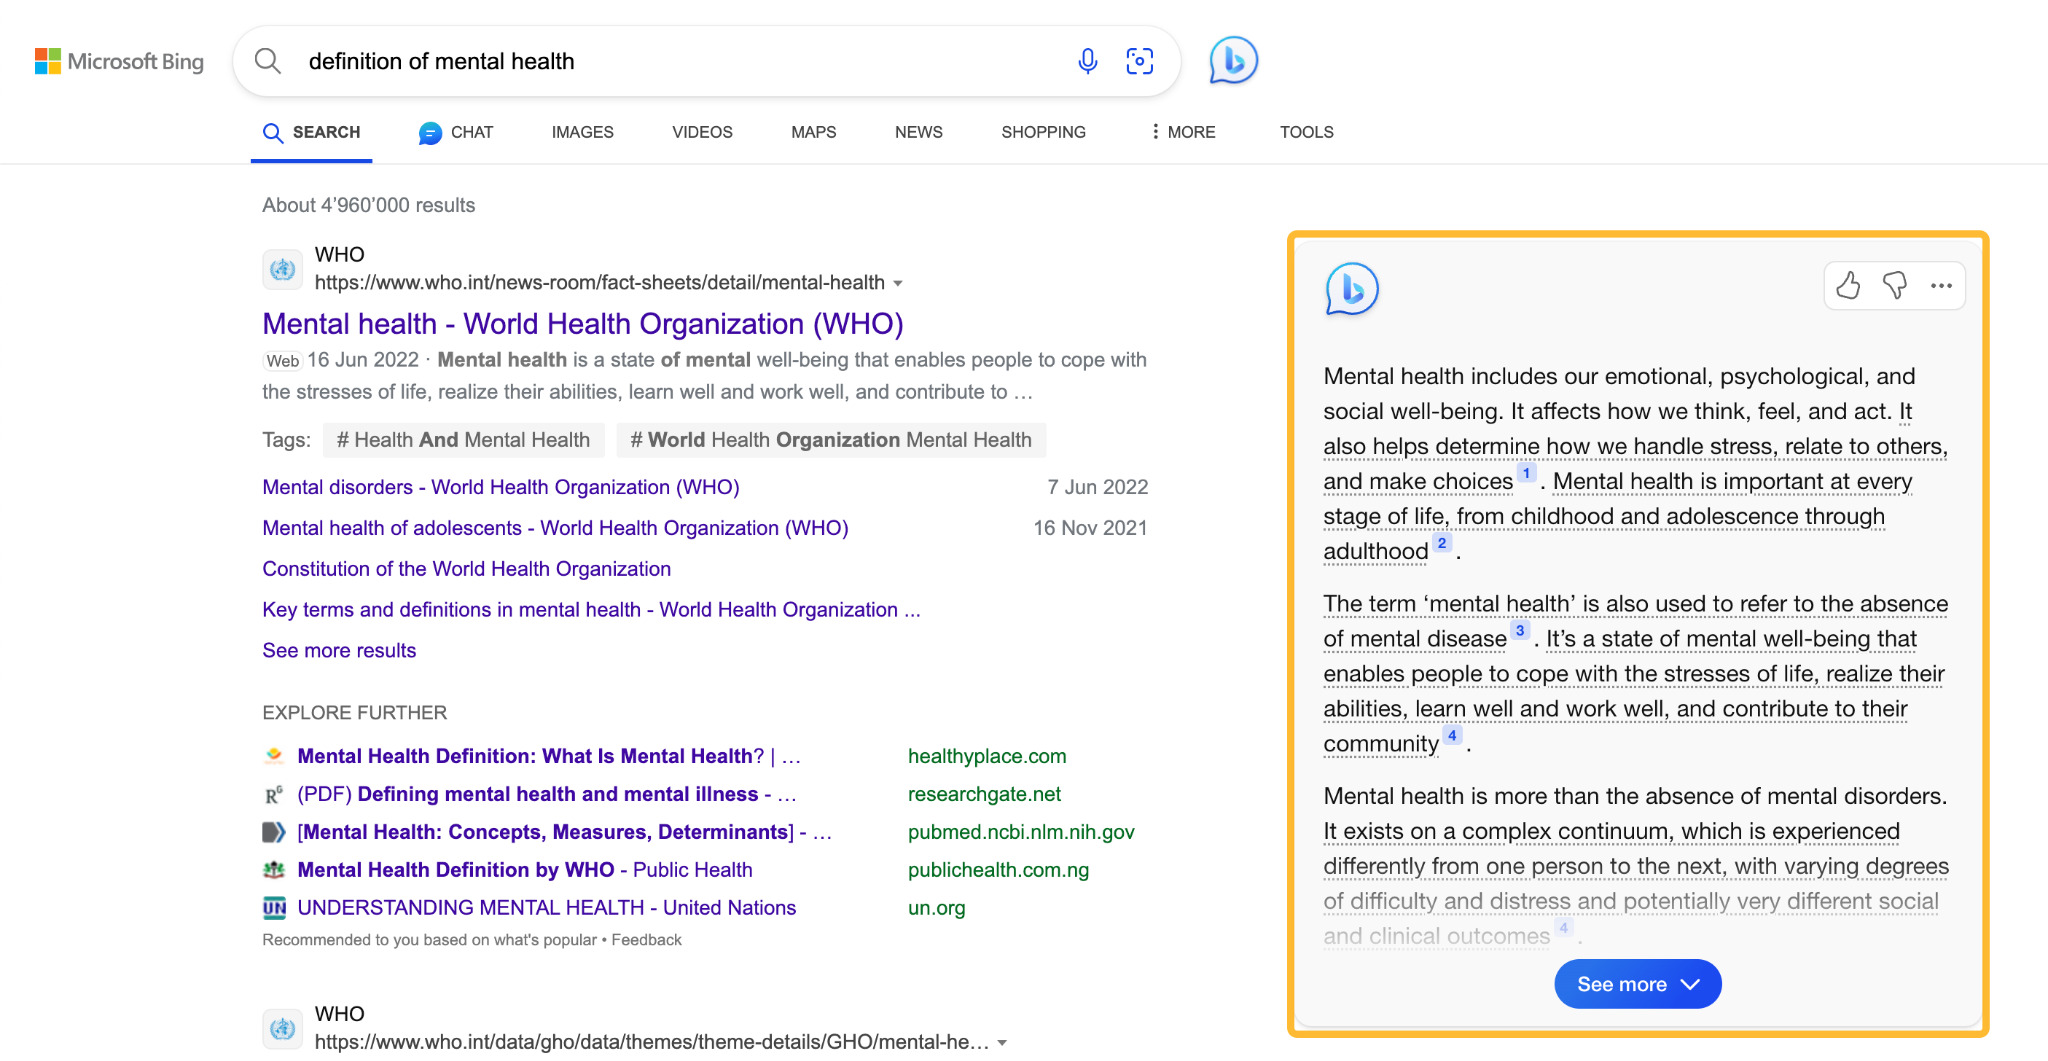 Résultats de recherche de Bing pour "définition de la santé mentale"